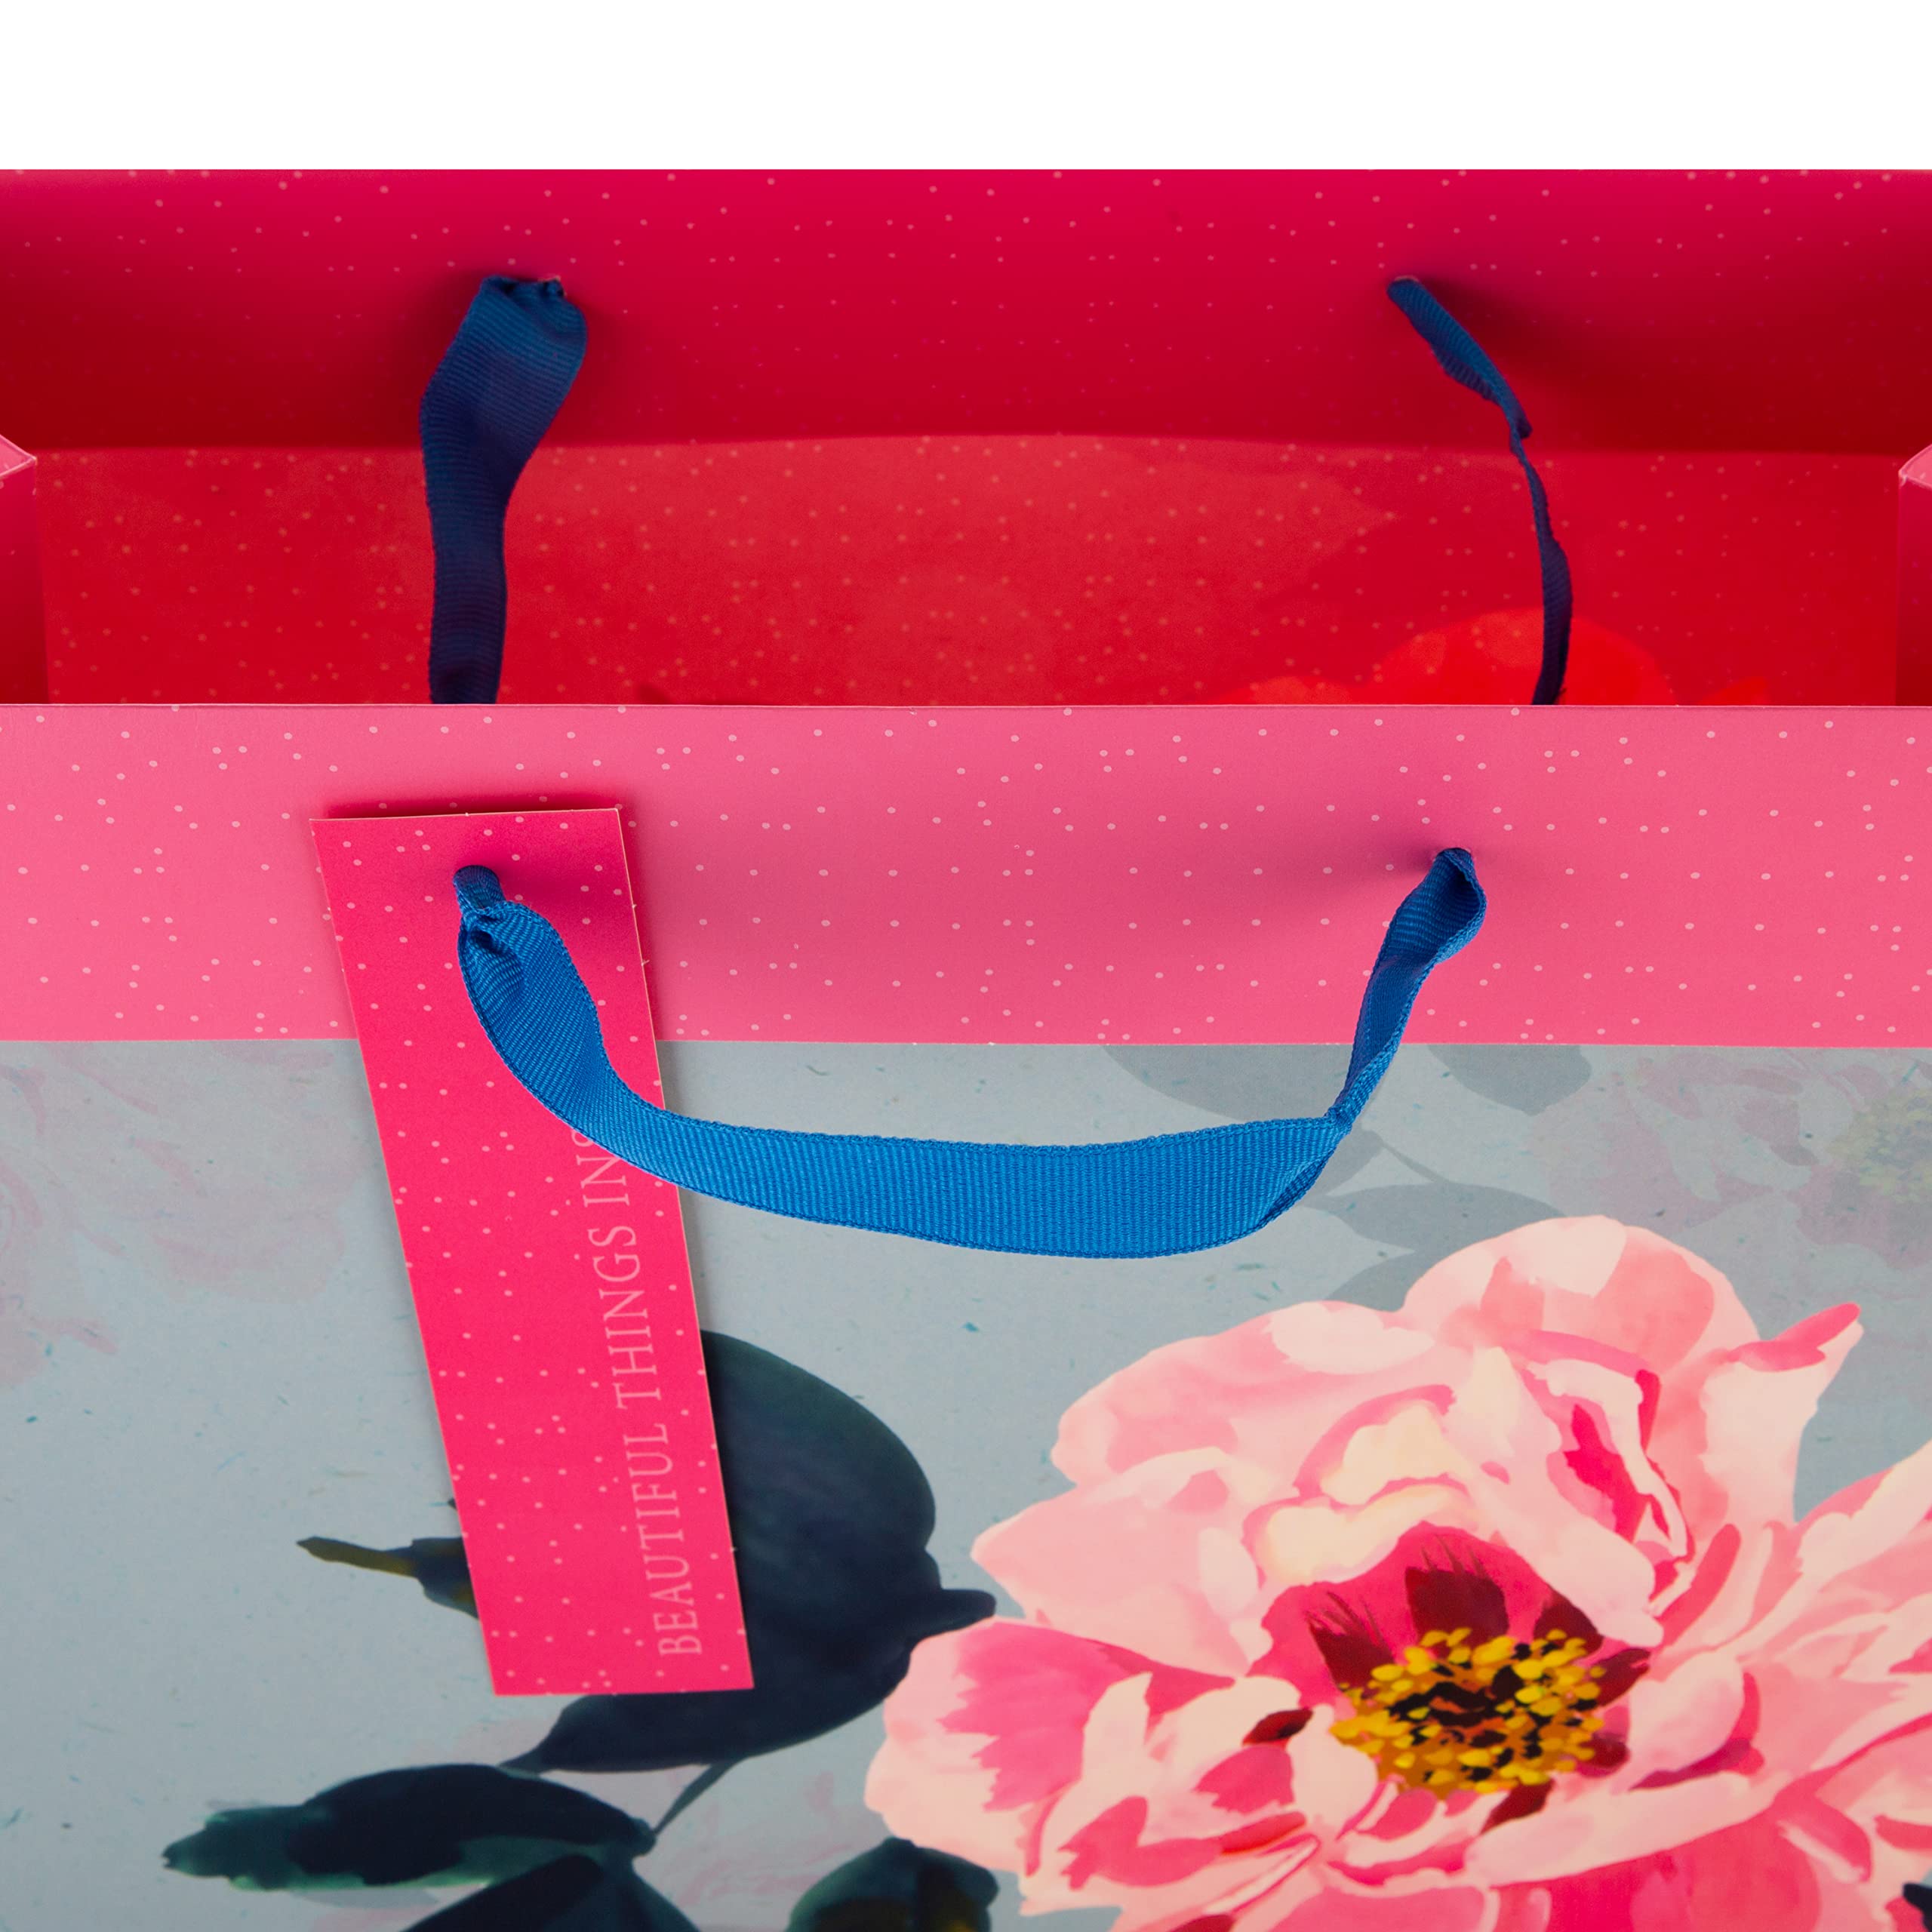 Hallmark Multi-Occasion Large Gift Bag - Elegant Pink And Blue Floral Design